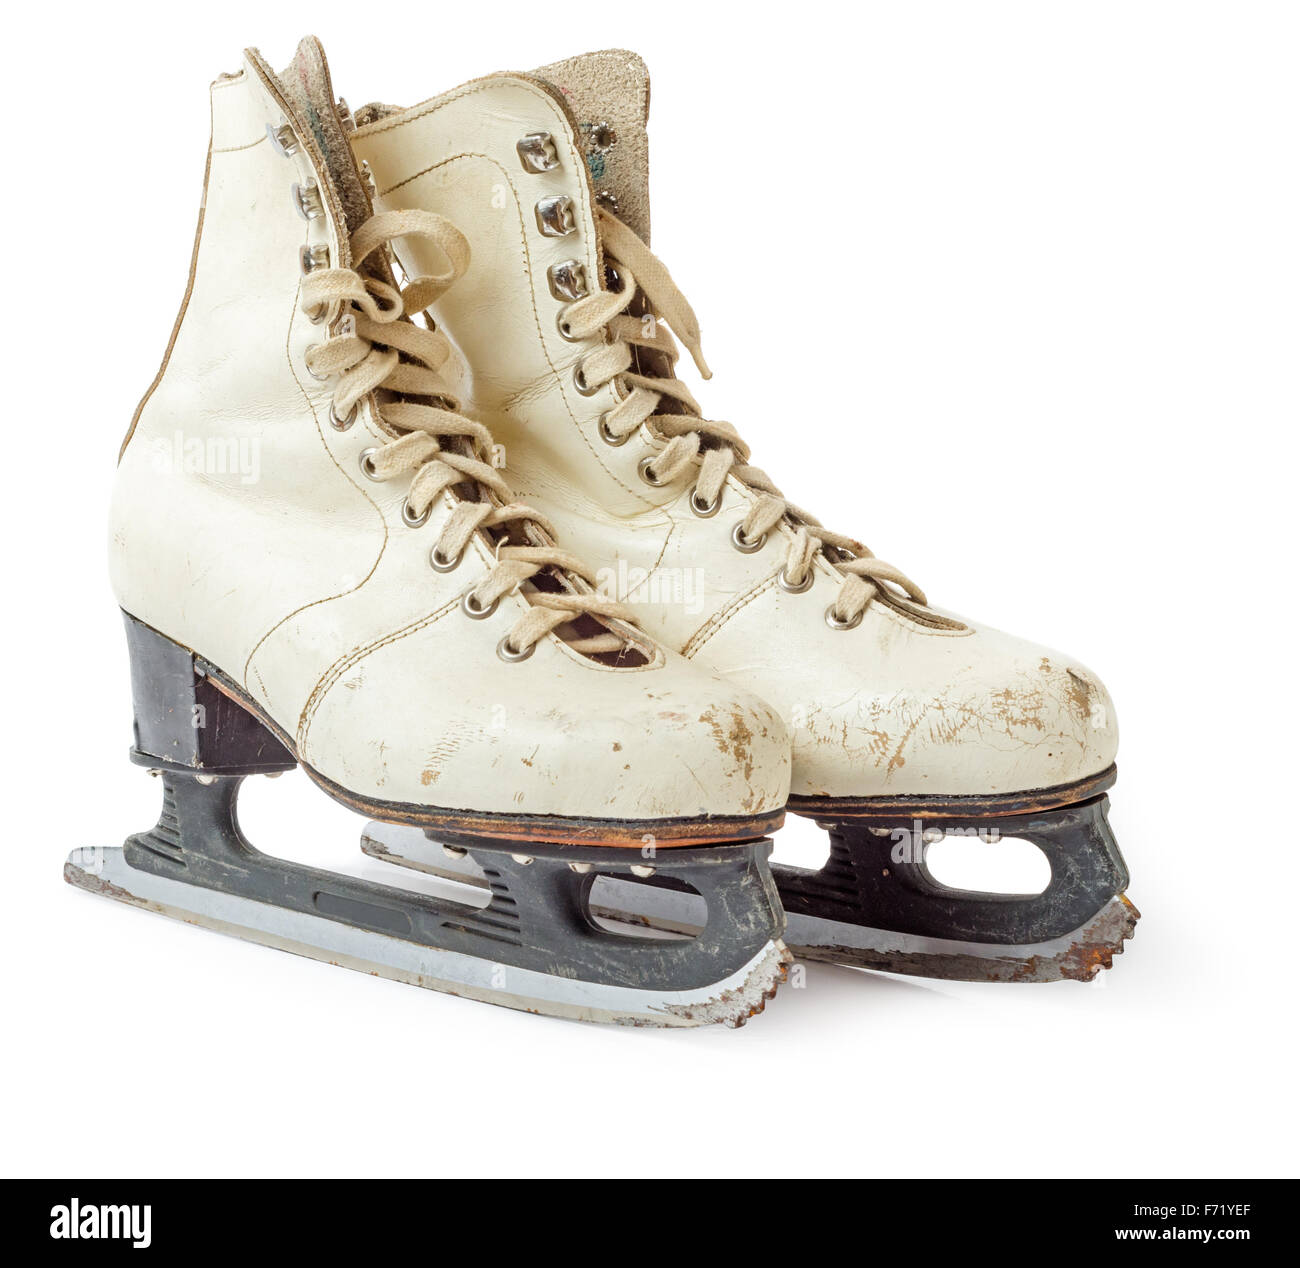 Vintage ice skates Banque de photographies et d'images à haute résolution -  Alamy